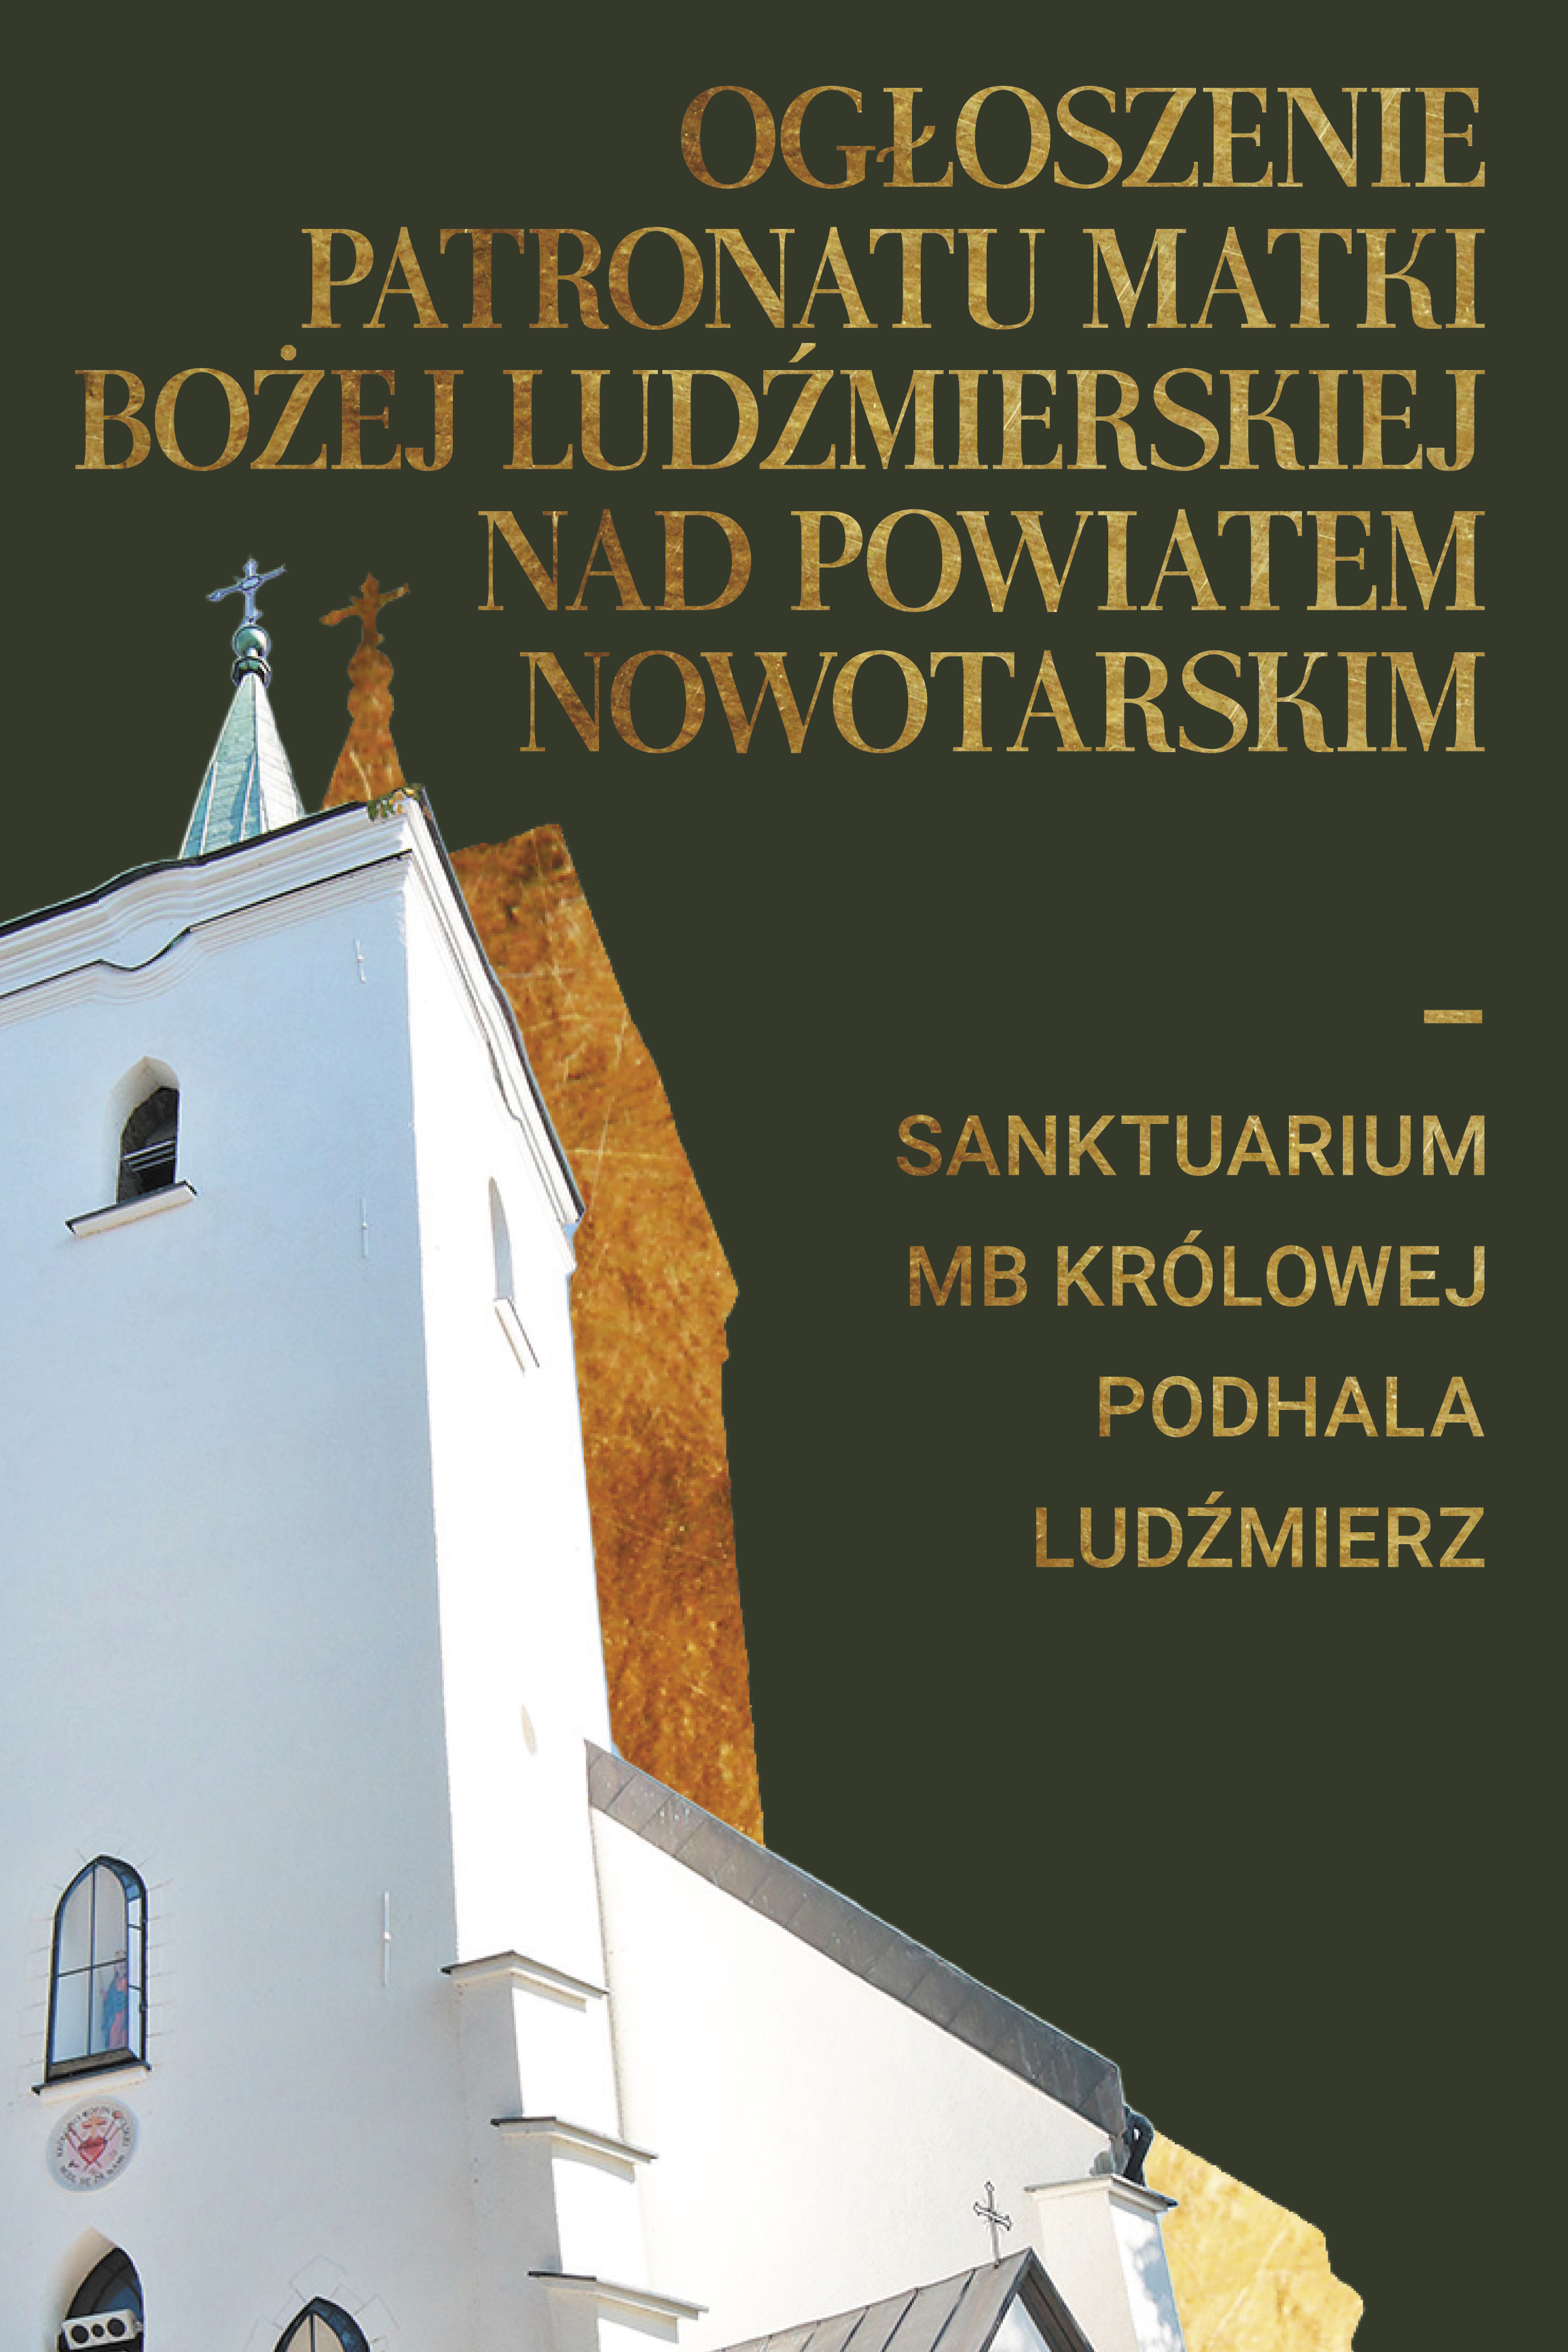 Ogłoszenie patronatu Matki Bożej Ludźmierskiej nad powiatem nowotarskim